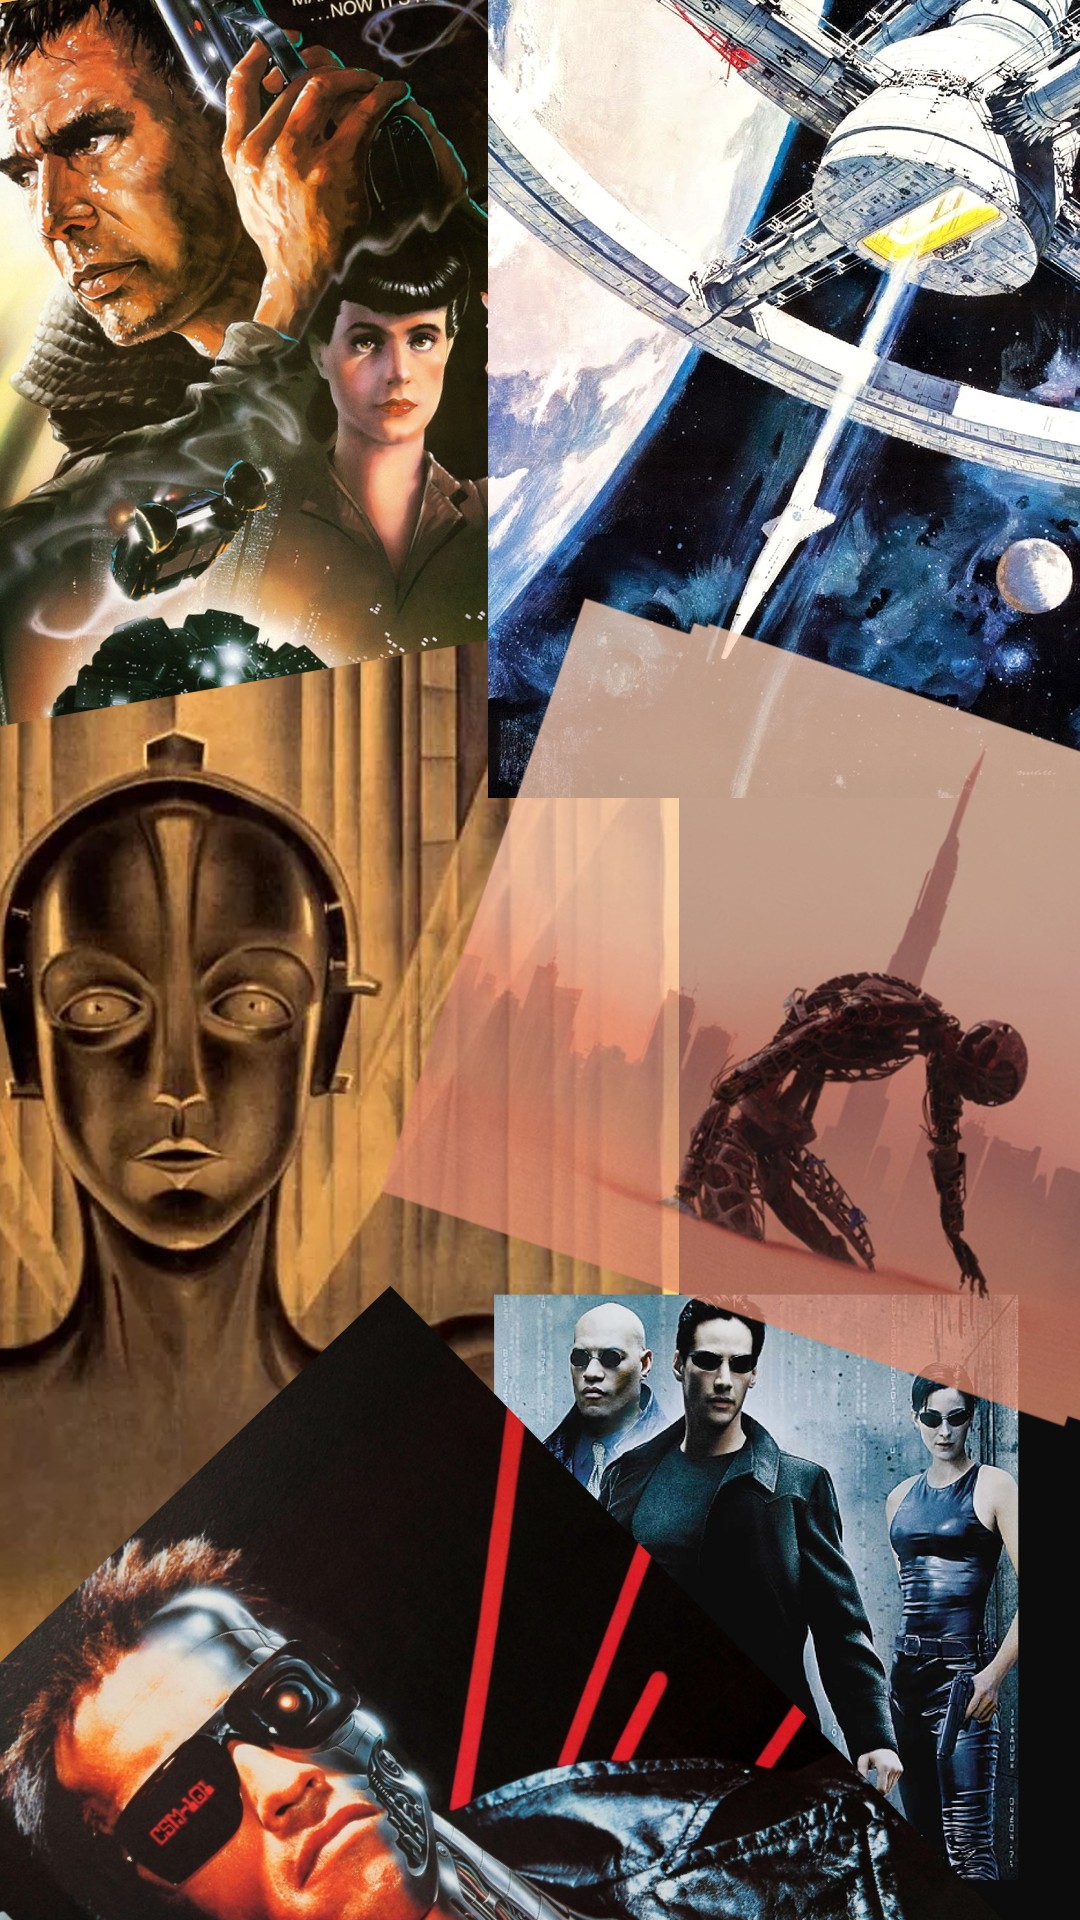 4 filmes sobre inteligência artificial que você precisa assistir